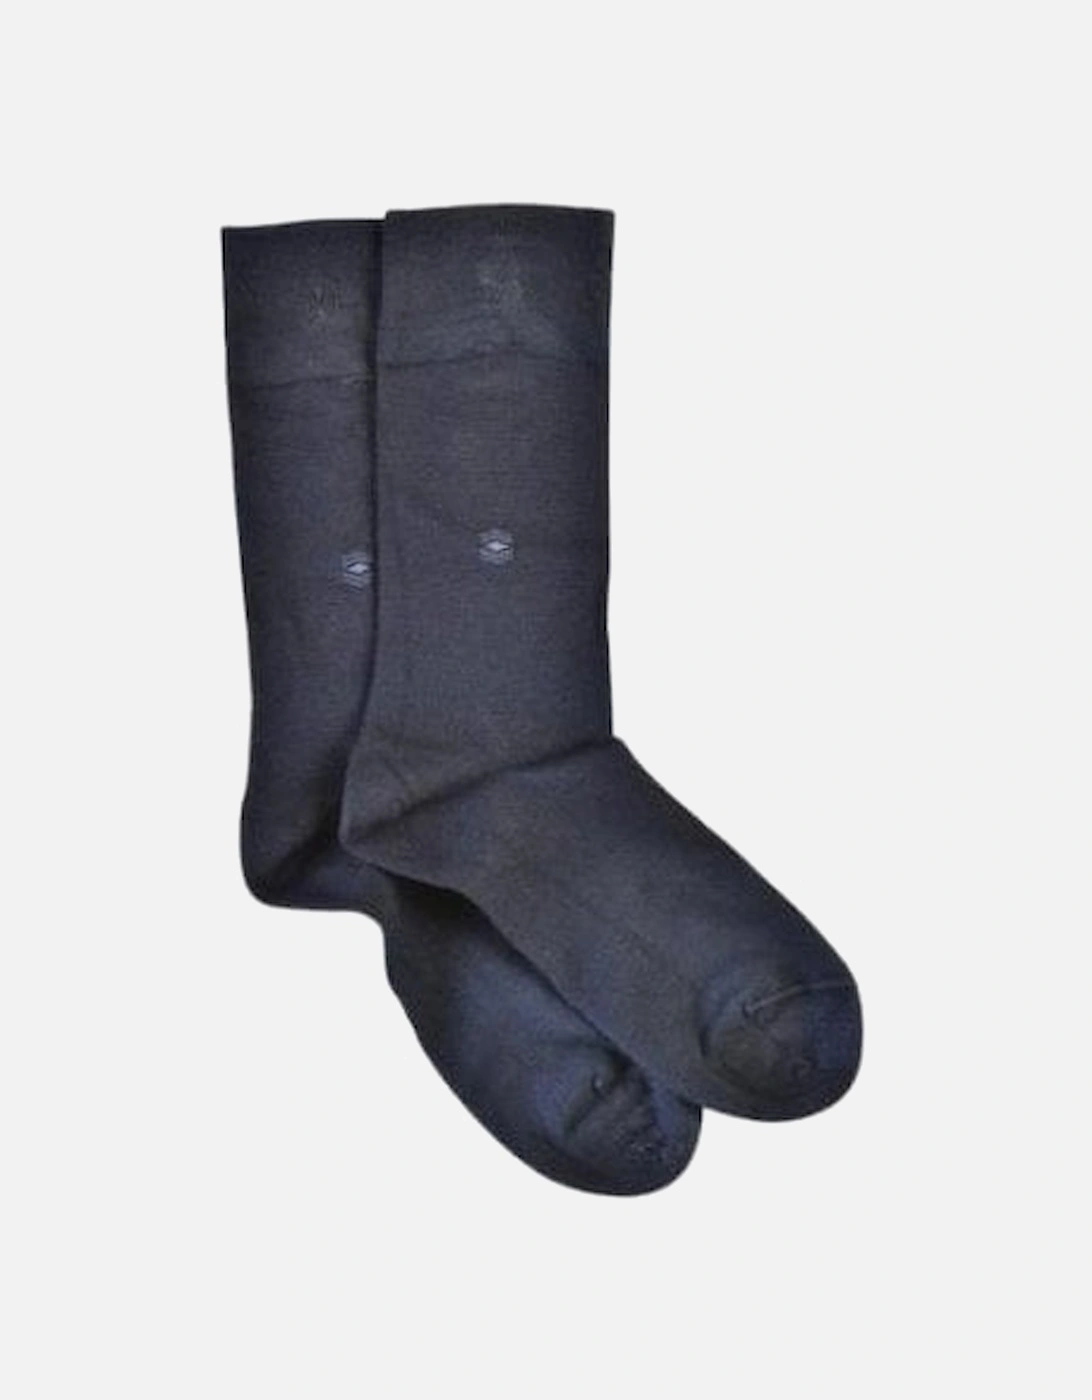 Pair Navy Socks, 2 of 1